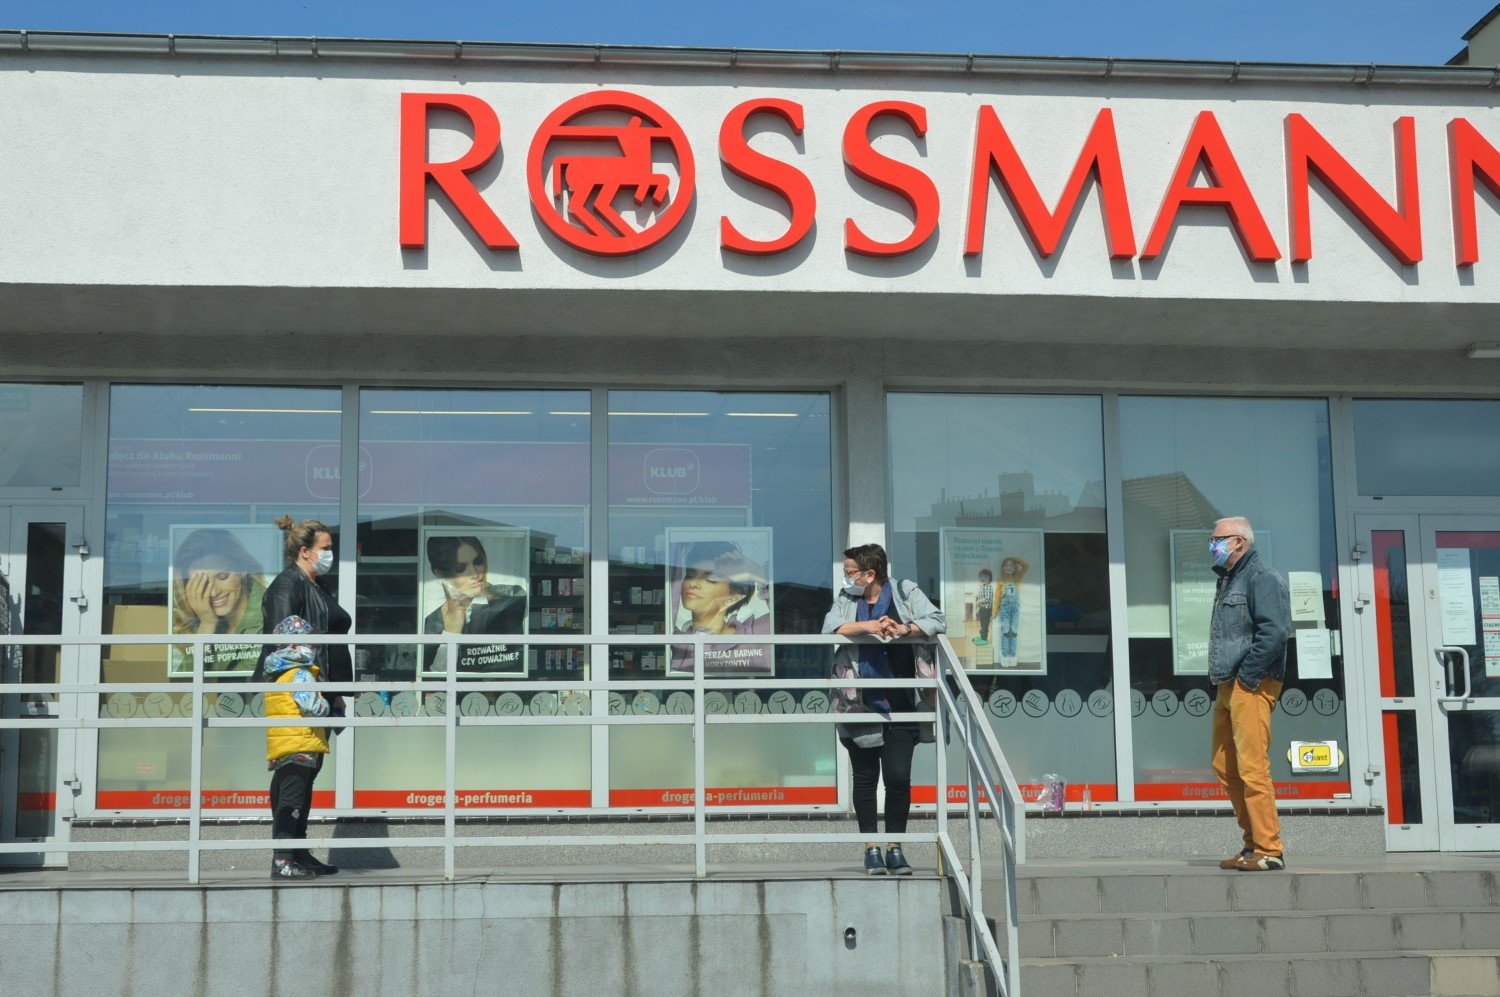 Czy Rossmann stosuje w swoich sklepach w rejonie Żar i Żagania dostateczne  środki ostrożności? - pyta Czytelniczka | Żagań Nasze Miasto